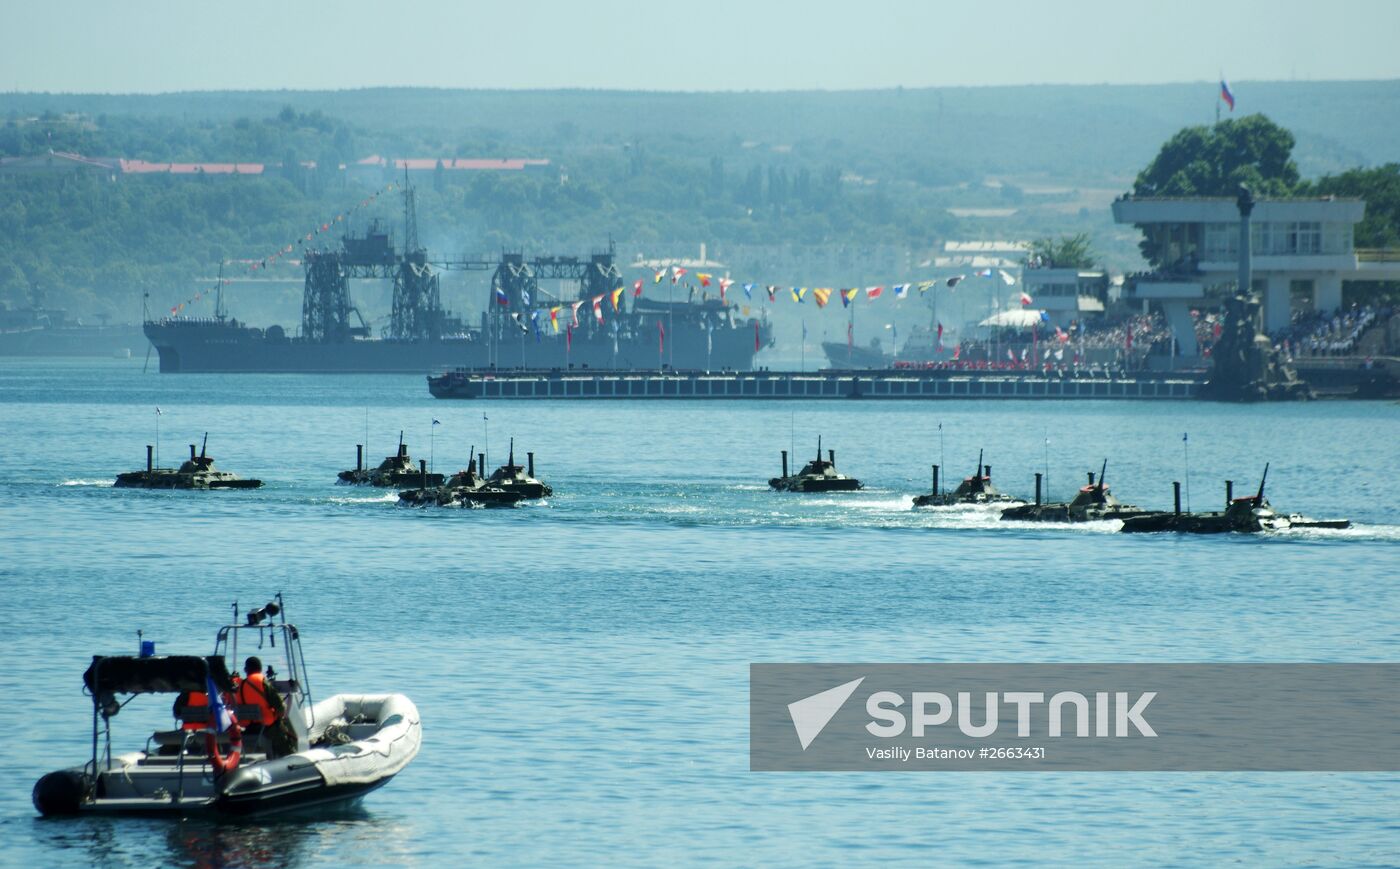 Rehearsal for Navy Day Parade in Sevastopol